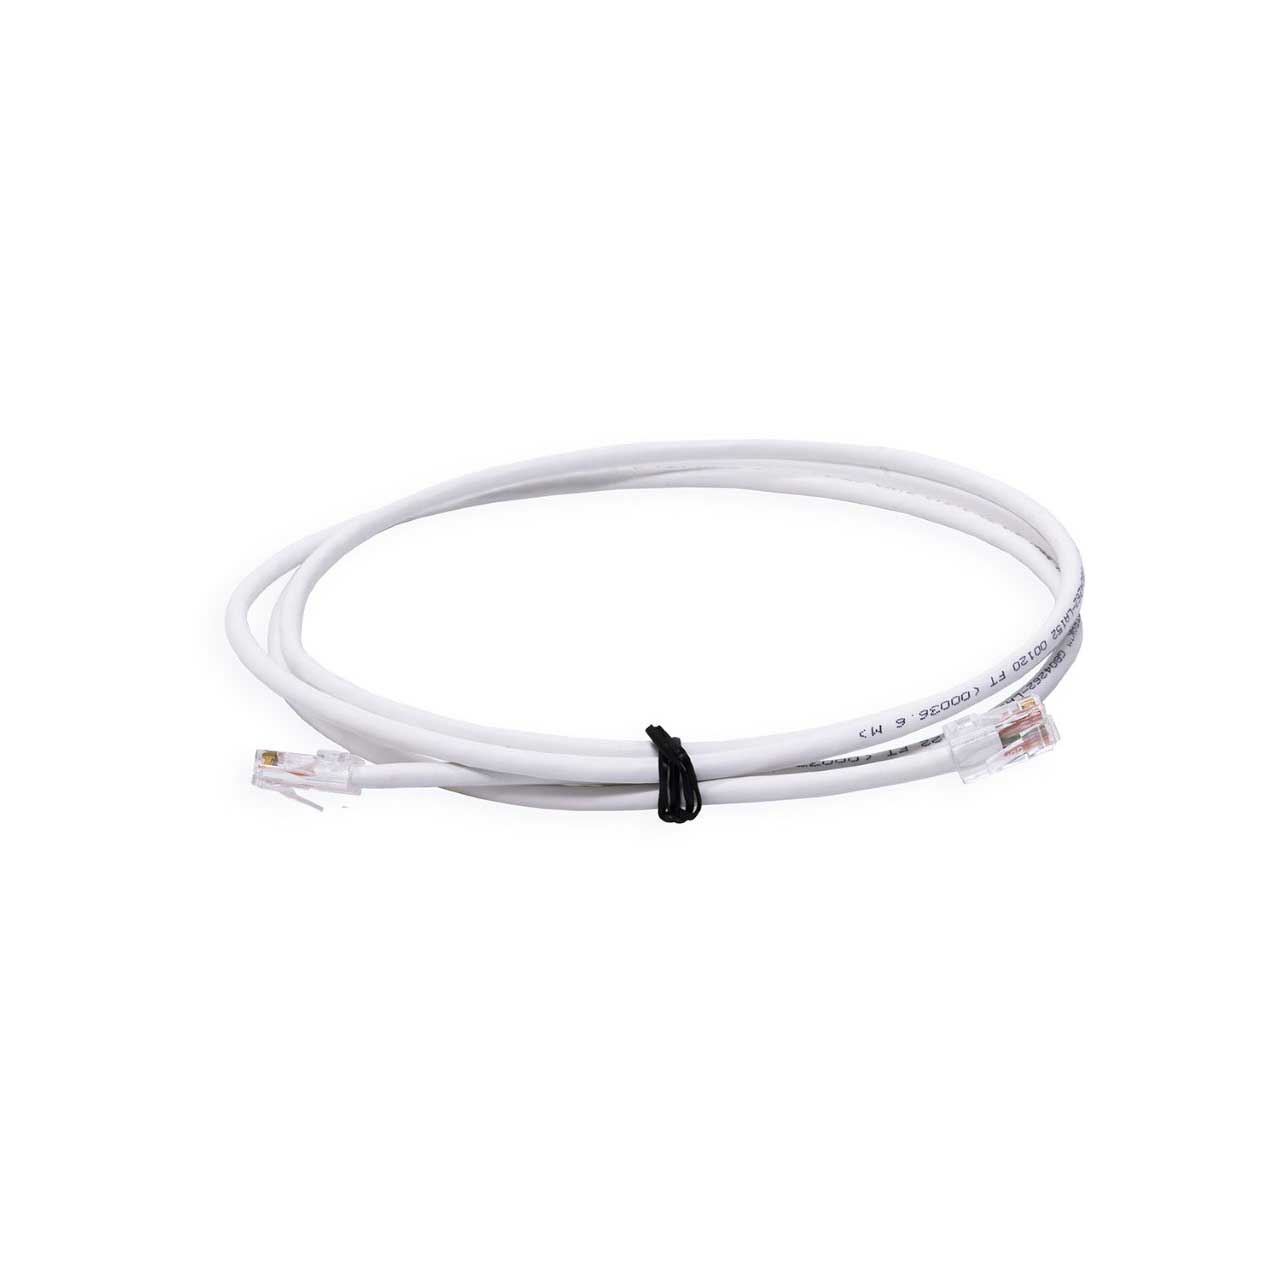 ikan LIVECOM1000-C RJ45 Cascade Cable for Livecom1000 Wireless Intercom System IKANLIVECOM1000C